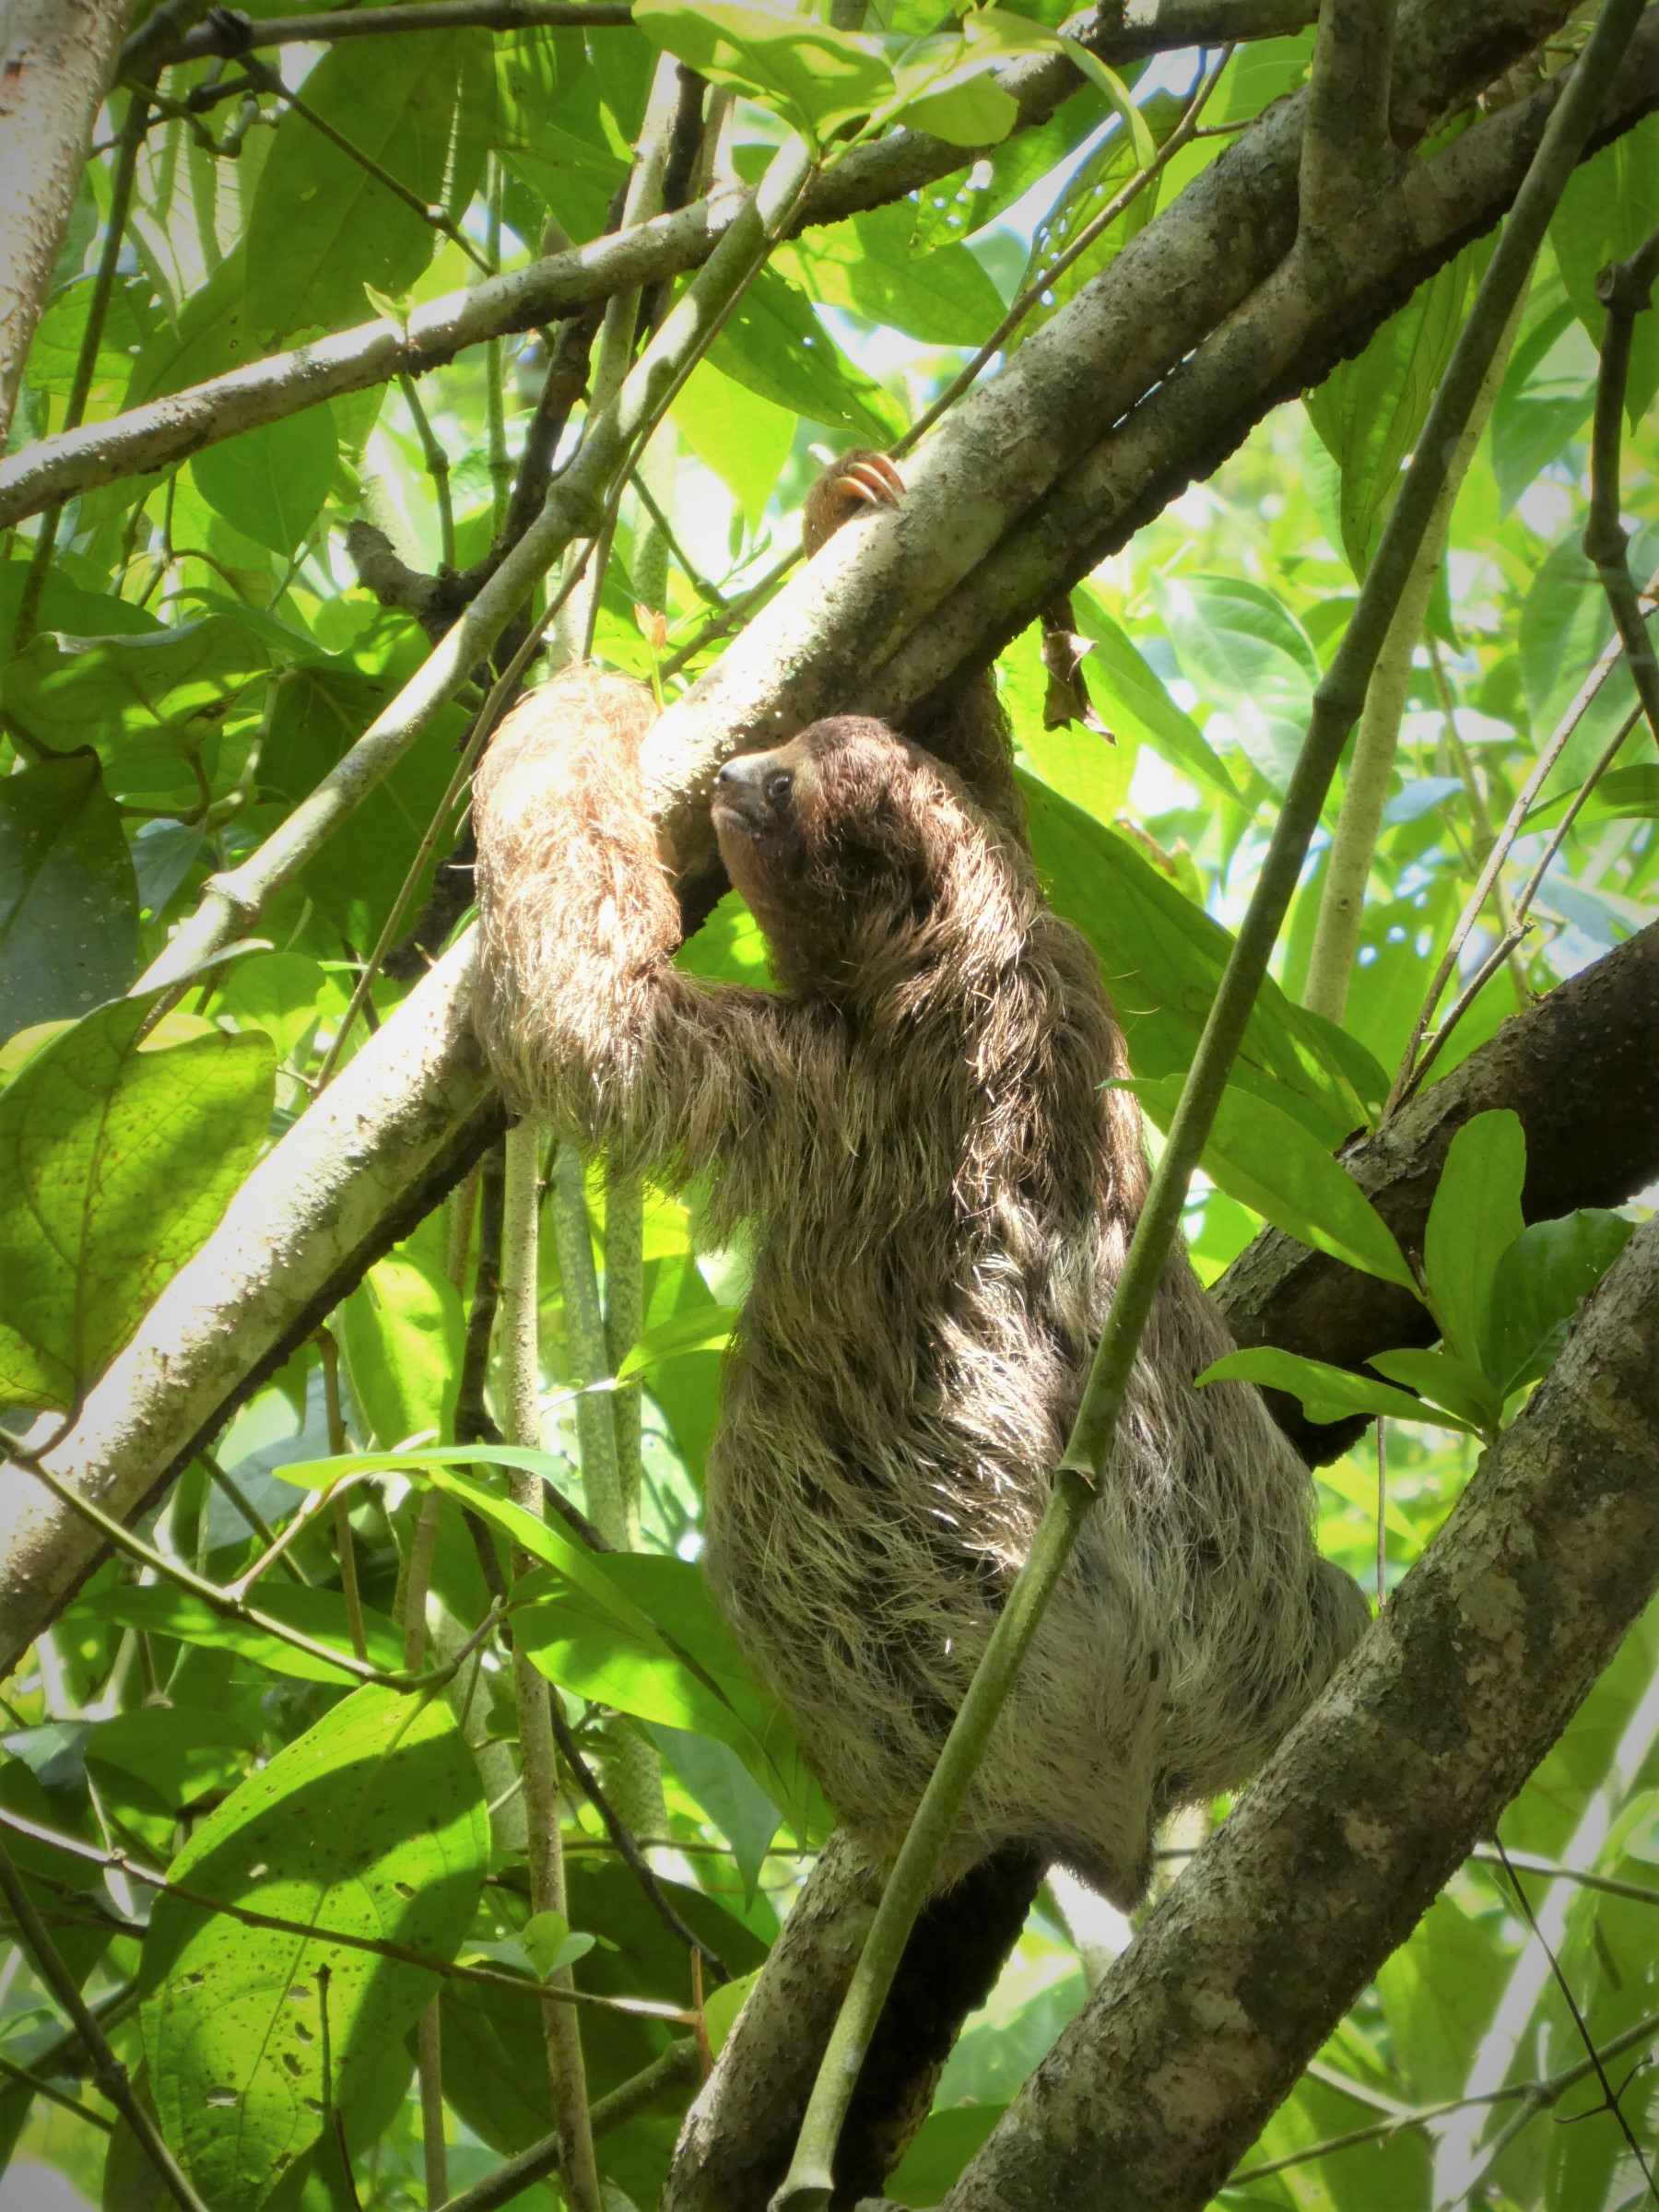 Baby sloth at Cahuita by hesaidorshesaid